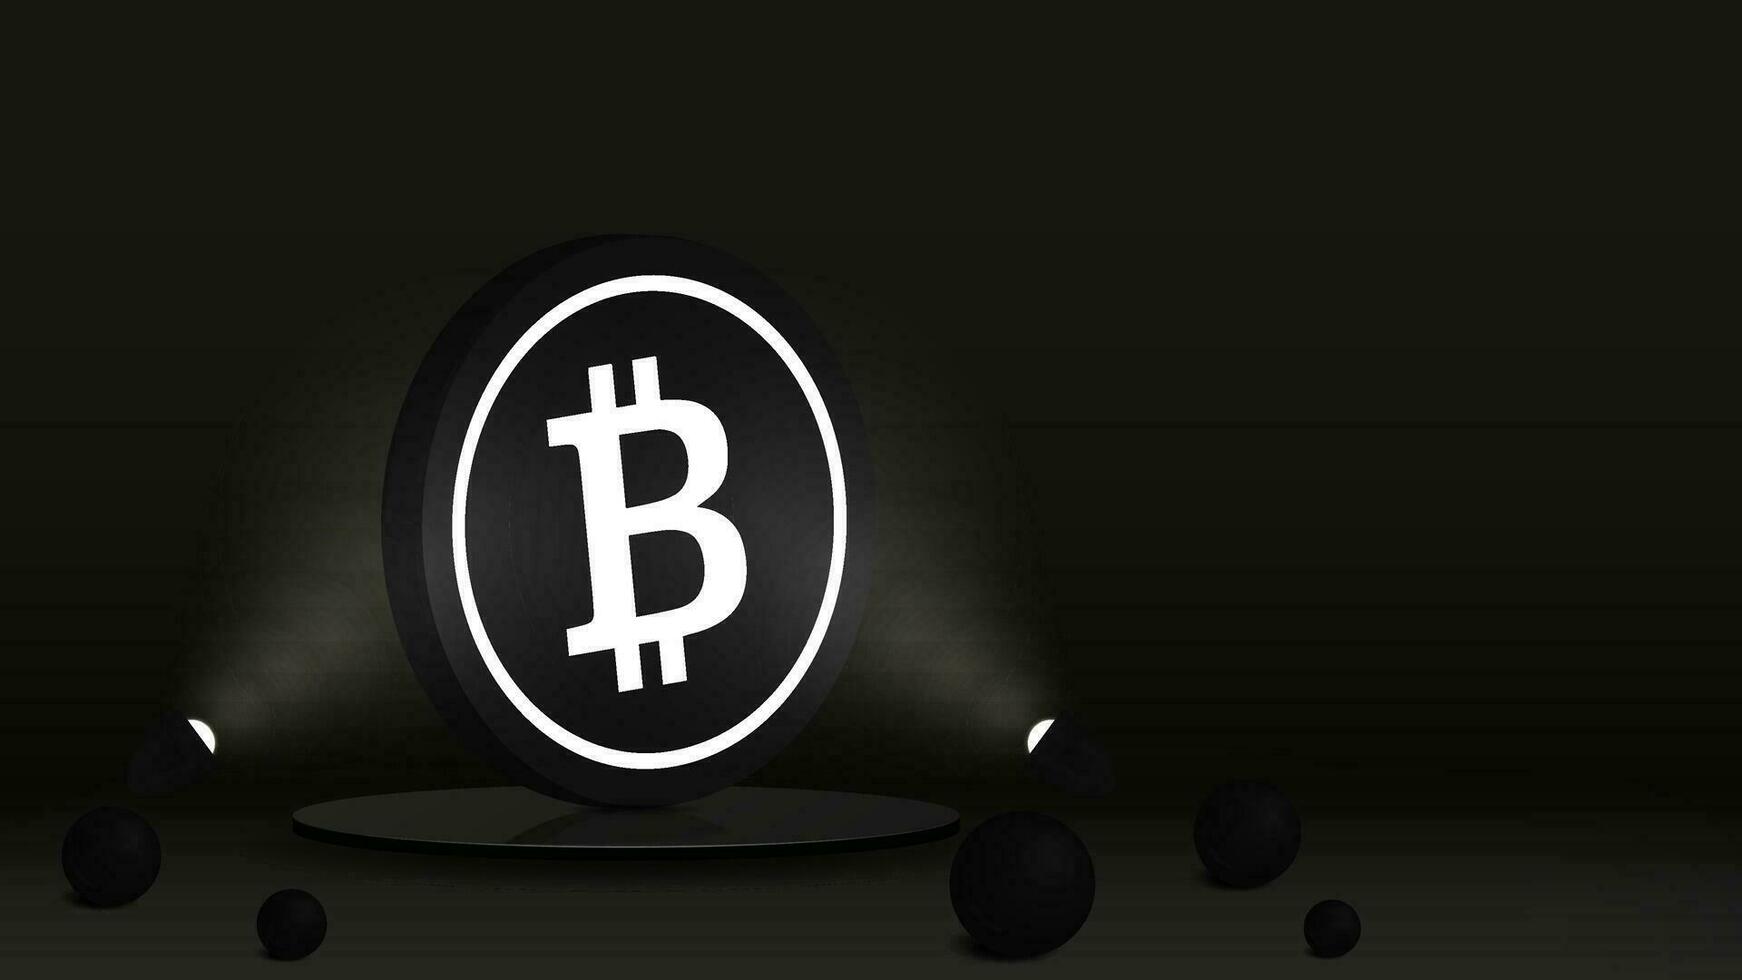 bannière à une site Internet avec une noir bitcoin pièce de monnaie sur une brillant podium illuminé par projecteurs. le concept dans le forme de une affiche pour cryptomonnaies et blockchain les technologies. vecteur